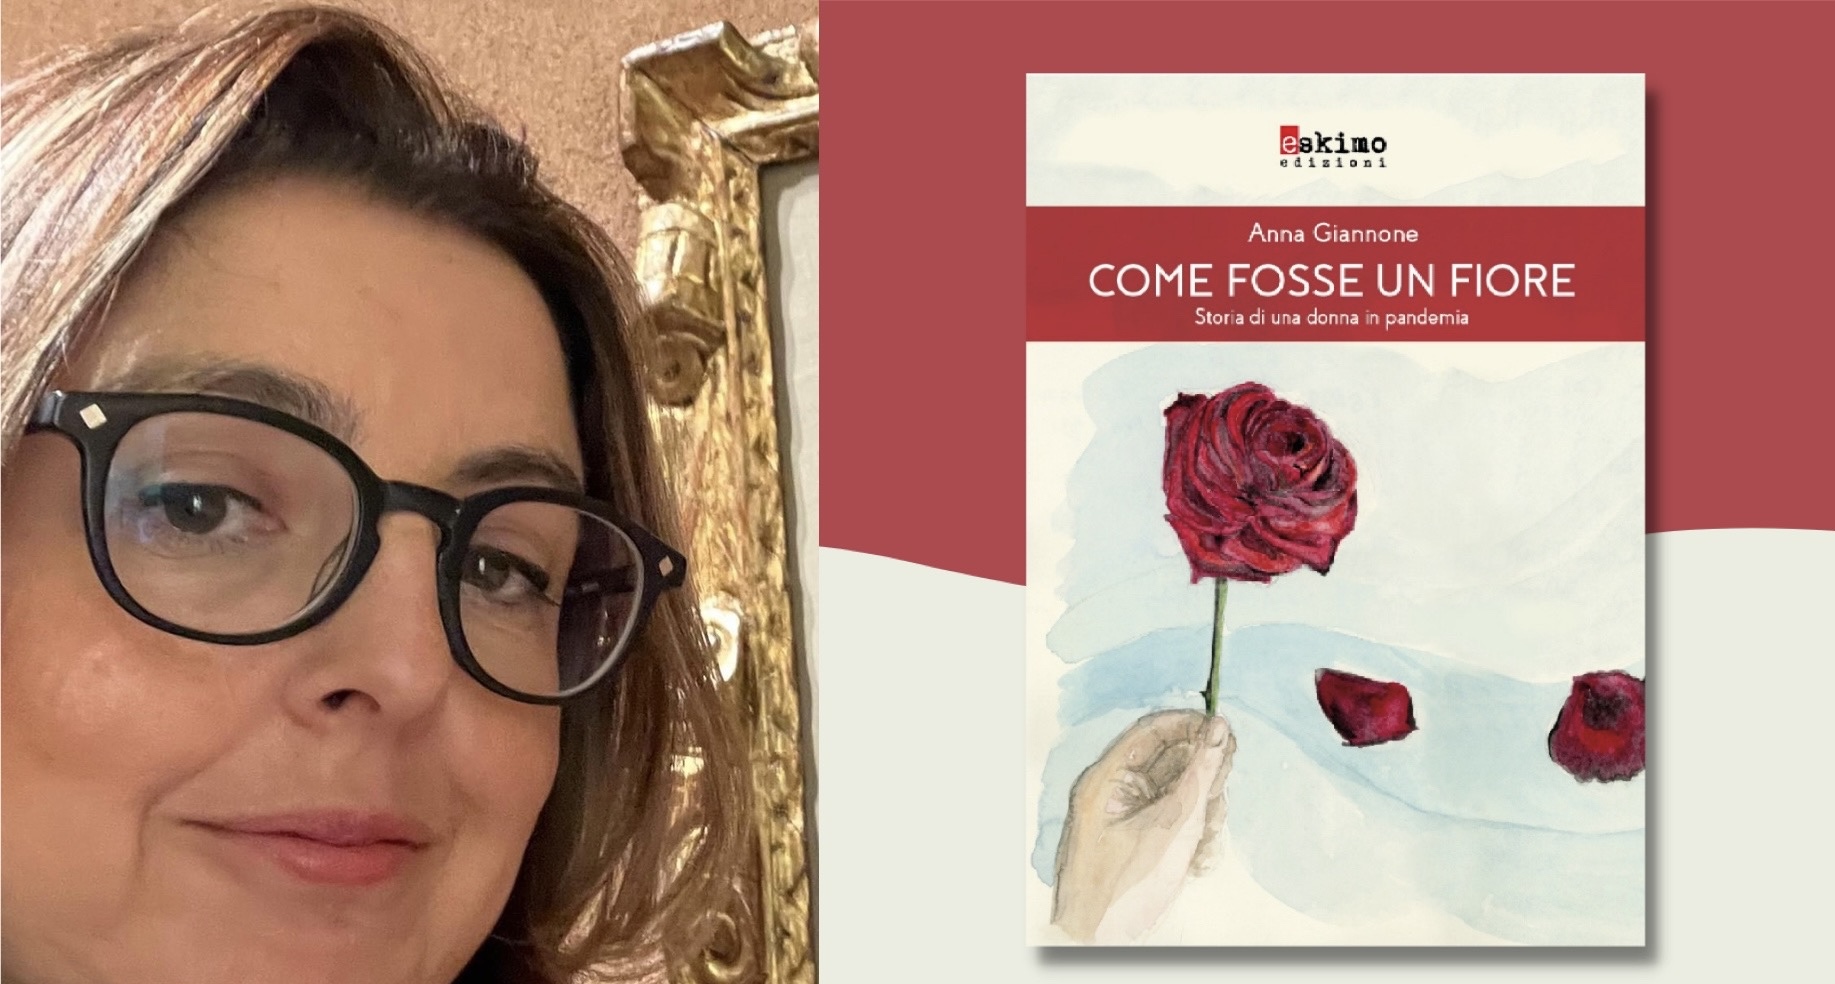 Caltanissetta. A Palazzo Moncada mostra “Oltre la paura” e presentazione del libro “Come fosse un fiore” di Anna Giannone